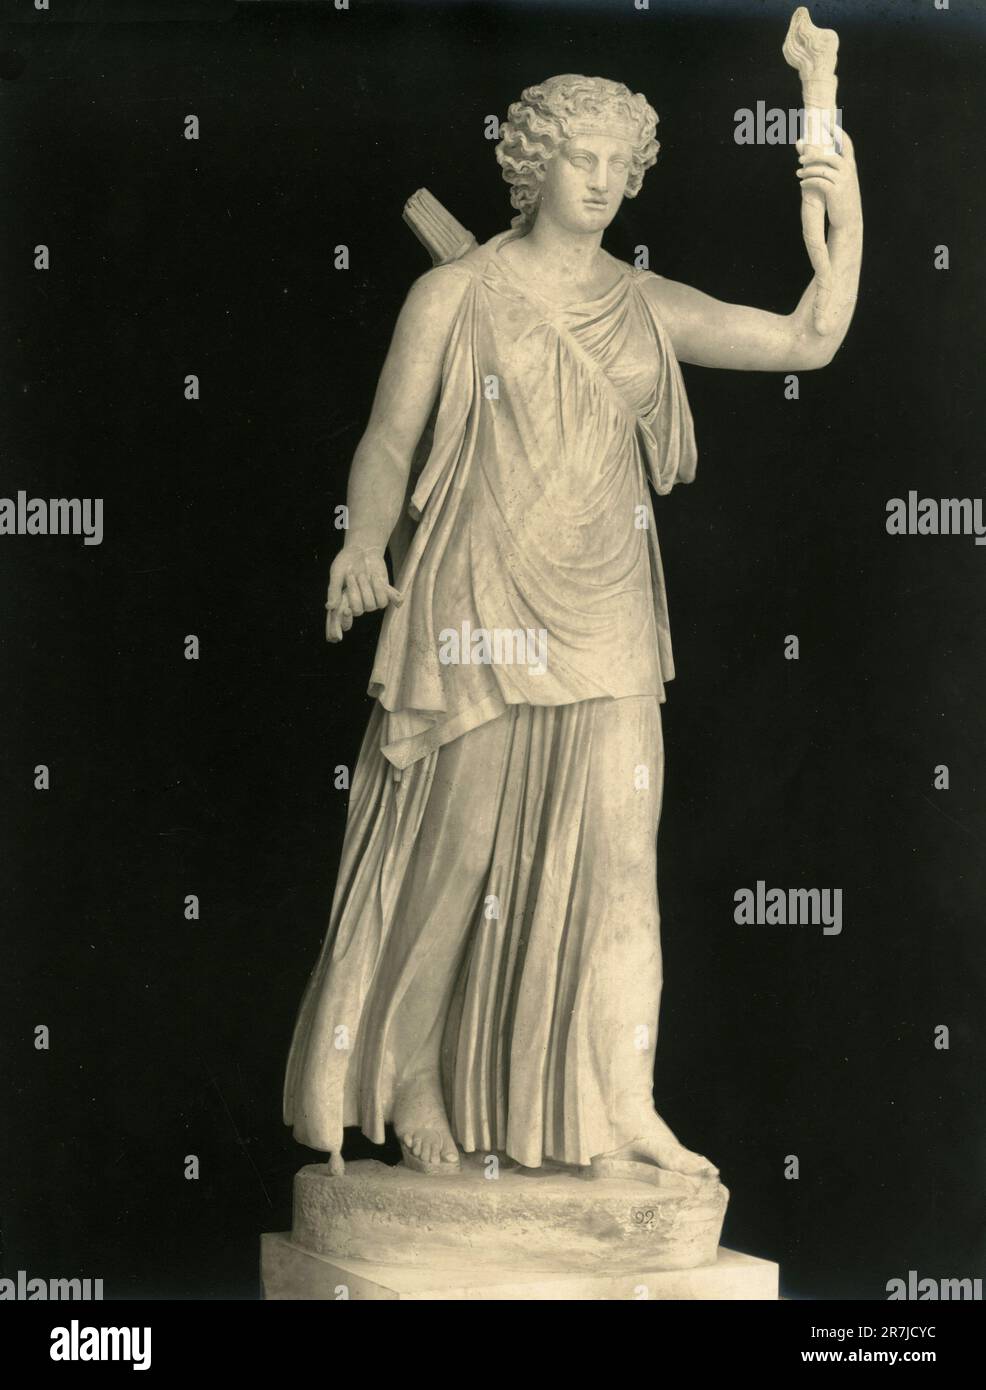 Antica statua marmorea della dea romana Artemis, o Diana Lucifera, Museo Vaticano, Roma, Italia 1900s Foto Stock